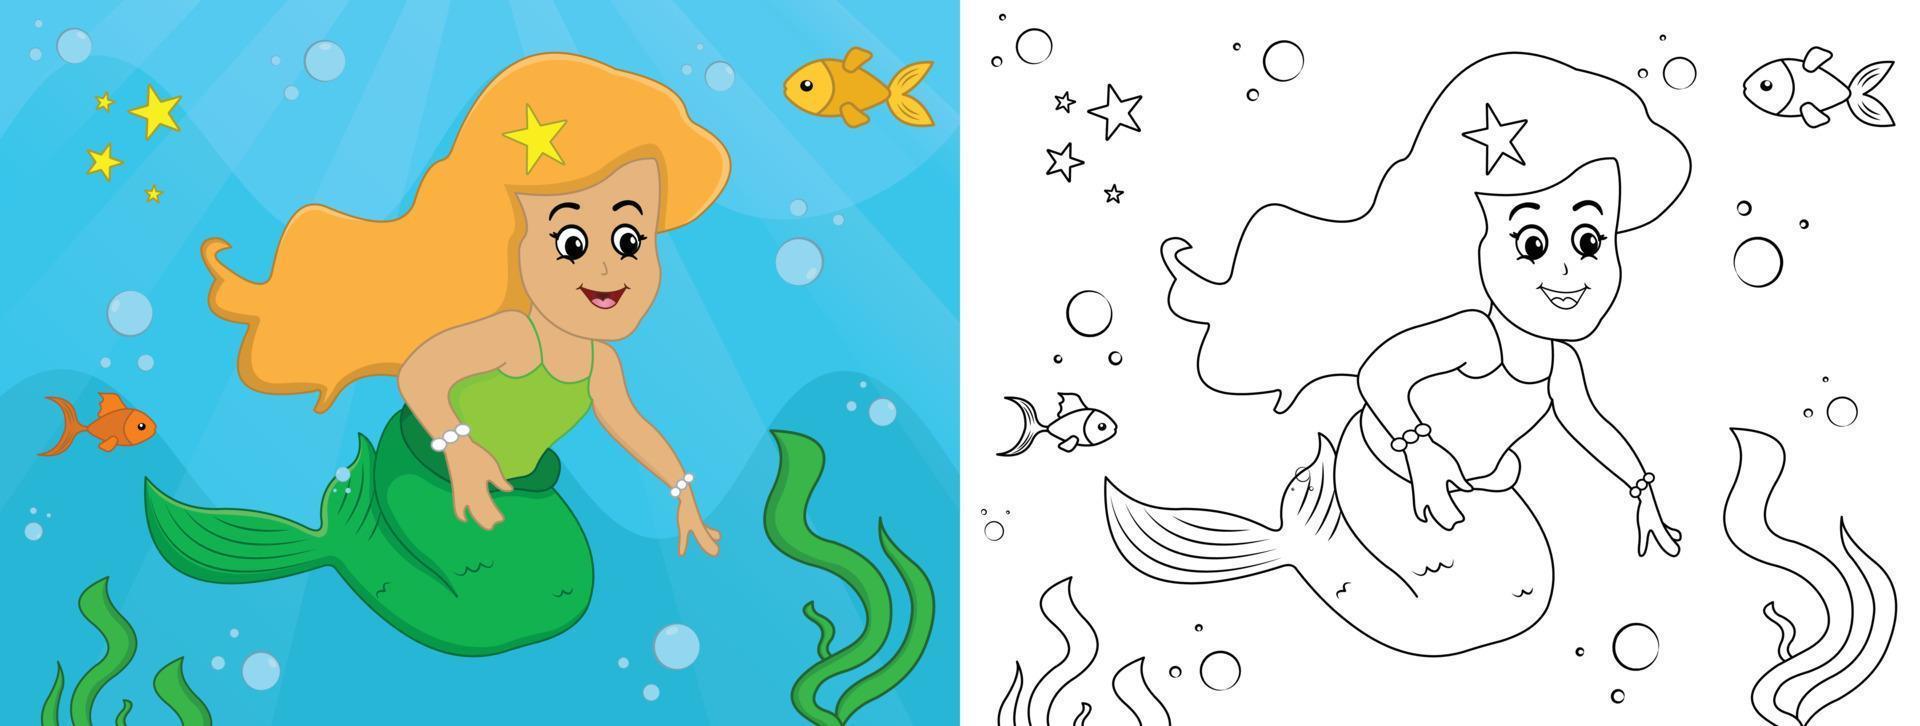 sirena de dibujos animados para colorear página no 06 página de actividades para niños con ilustración de vector de arte lineal